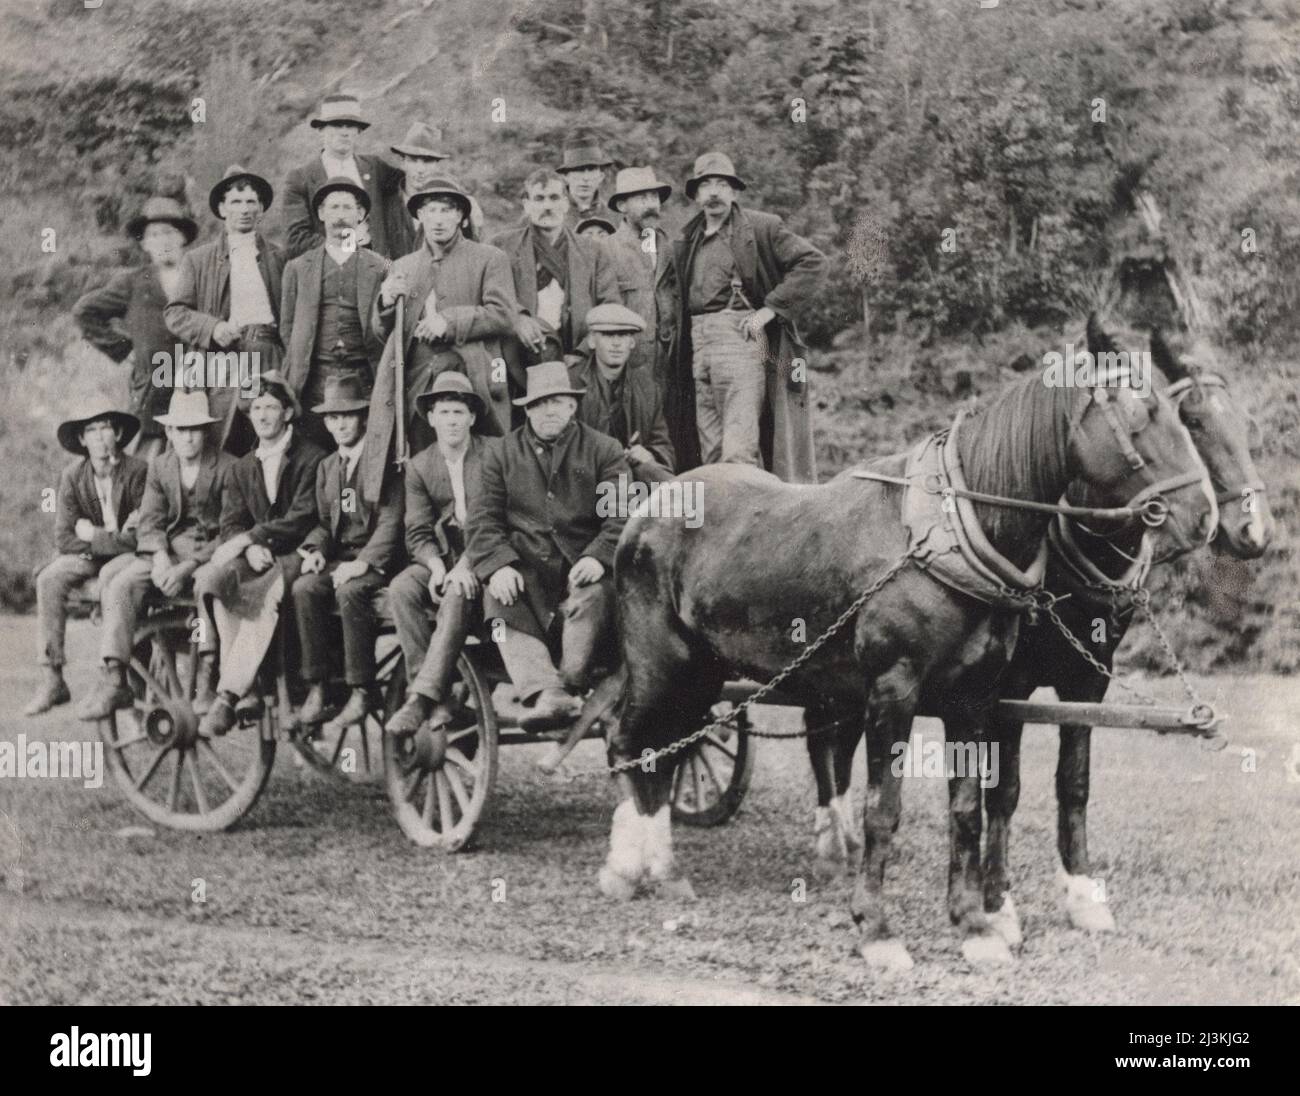 hombres-viajando-en-carro-tirado-por-caballos-en-el-valle-de-tweed-en-el-norte-de-nueva-gales-del-sur-australia-a-finales-de-1800-principios-de-1900-2j3kjg2.jpg